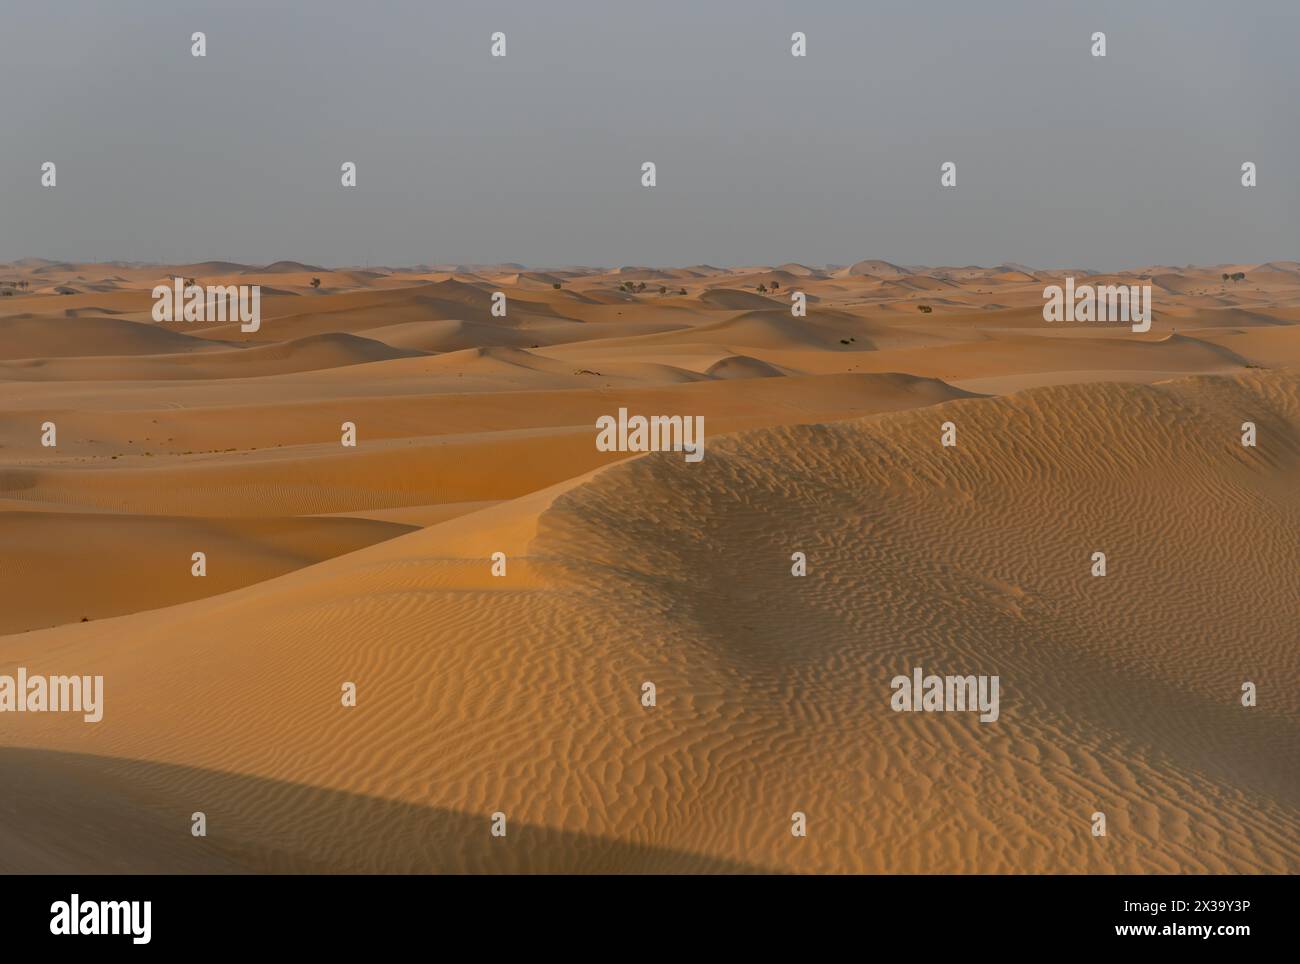 Ein Bild der Wüstenlandschaft außerhalb von Abu Dhabi. Stockfoto